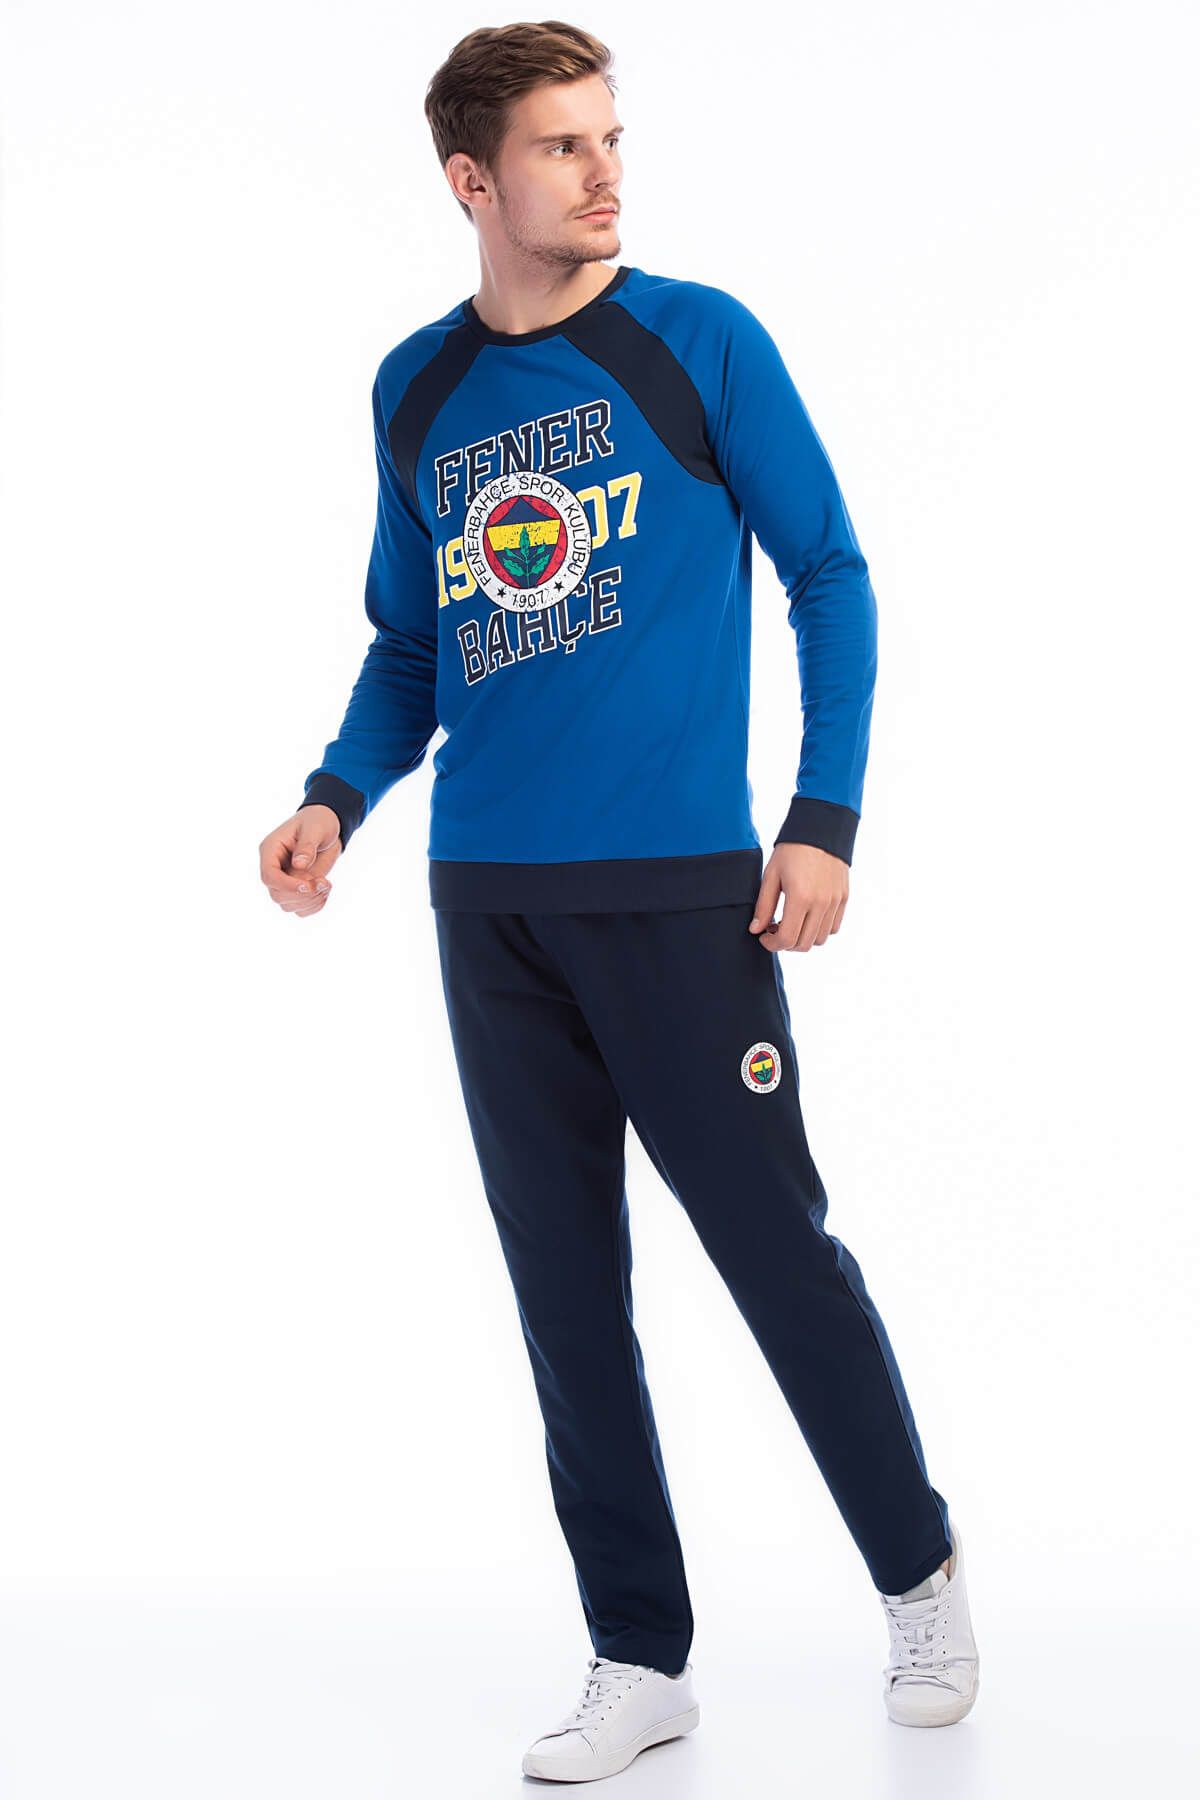 Fenerbahçe Fenerbahçe Mavi Erkek Pijama Takımı